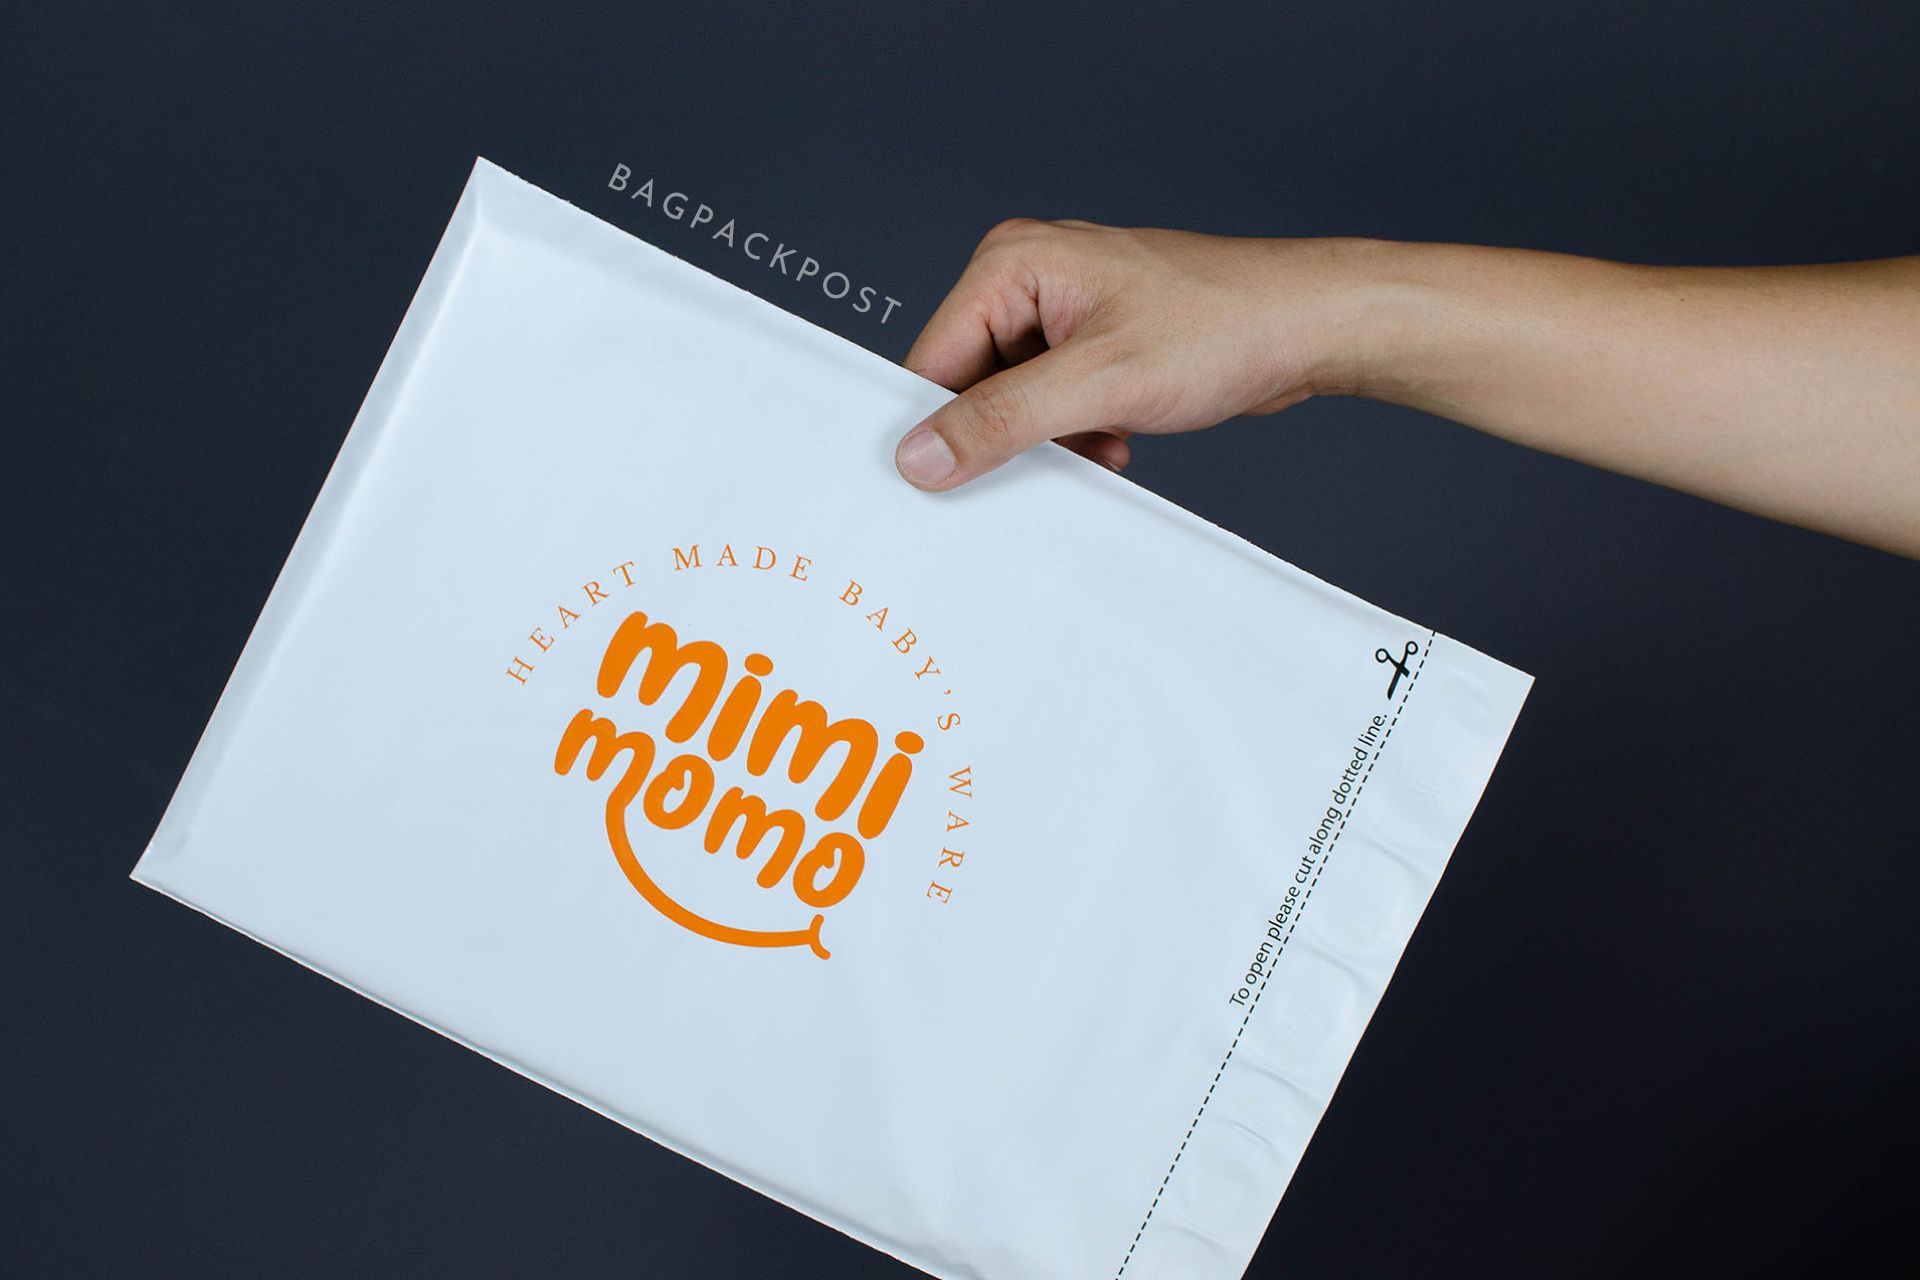 ผลิตถุงไปรษณีย์ ซองไปรษณีย์พิมพ์ลาย mimimomo ซองไปรษณีย์สีขาว ถุงไปรษณีย์พิมพ์ลาย 2 BagPackPost